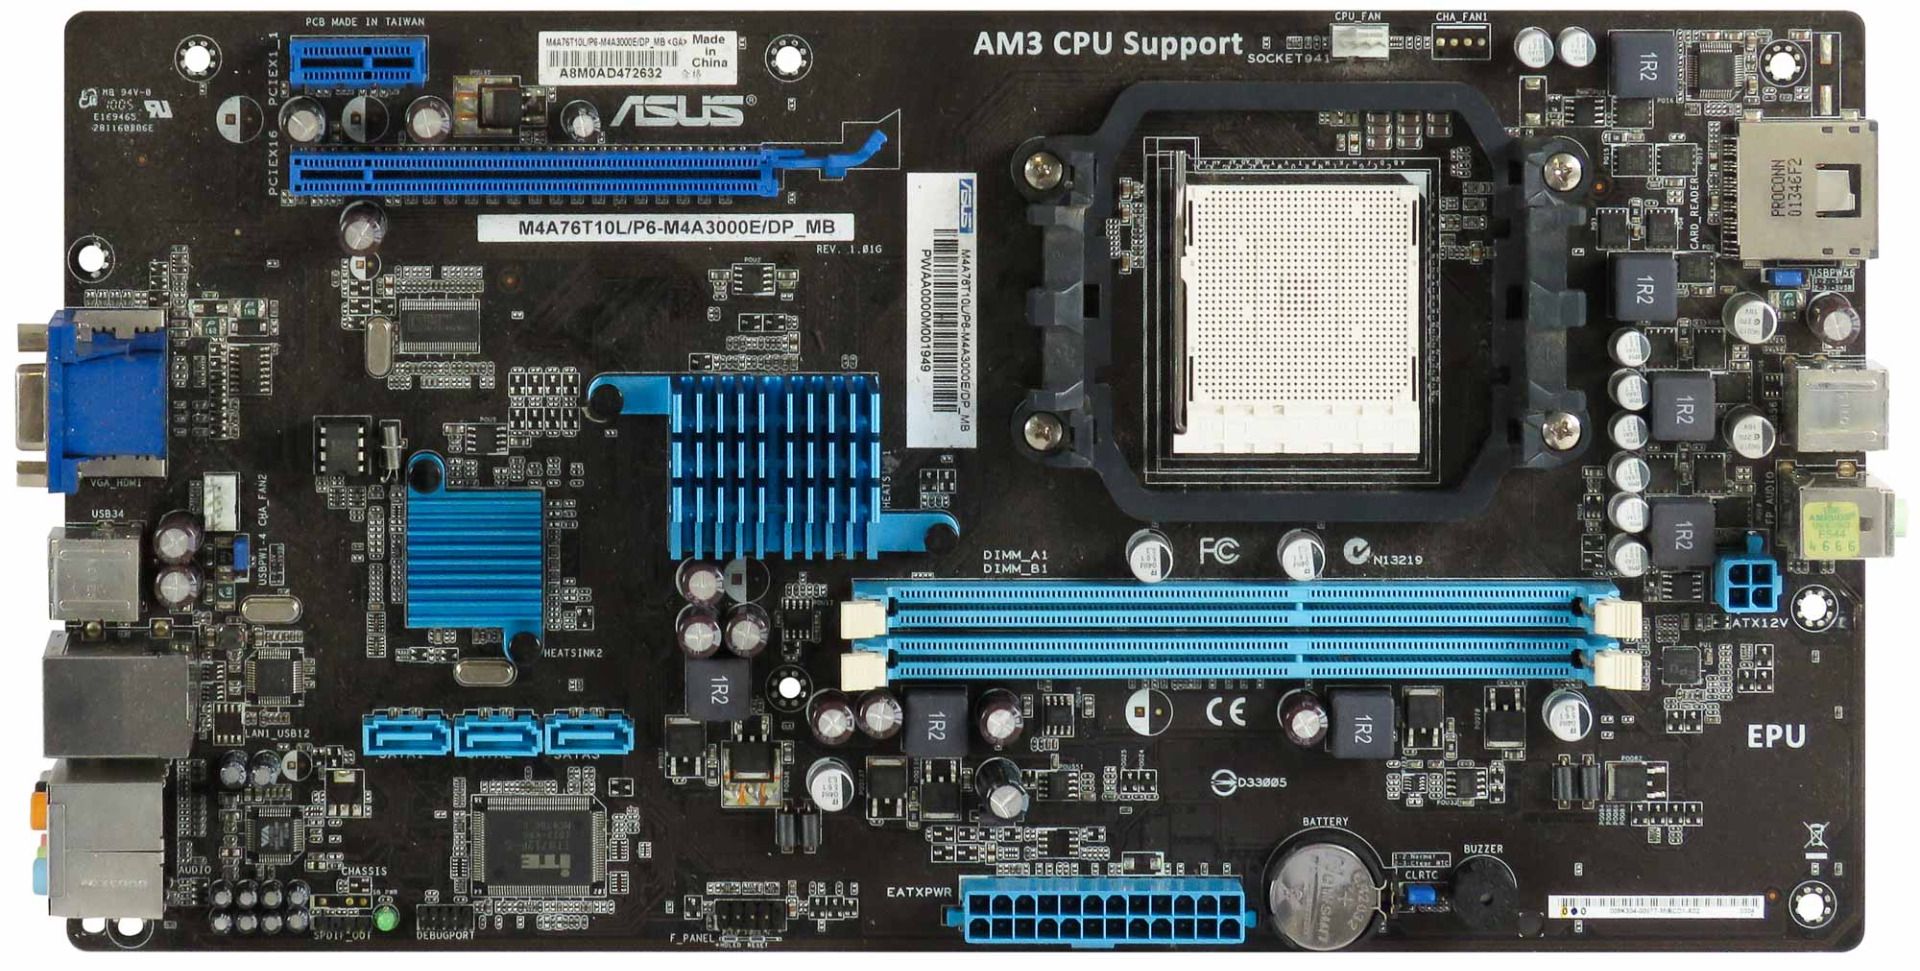 ASUS M4A76T10L/P6-M4A3000E/DP_MB su AM3 DDR3 PCIe